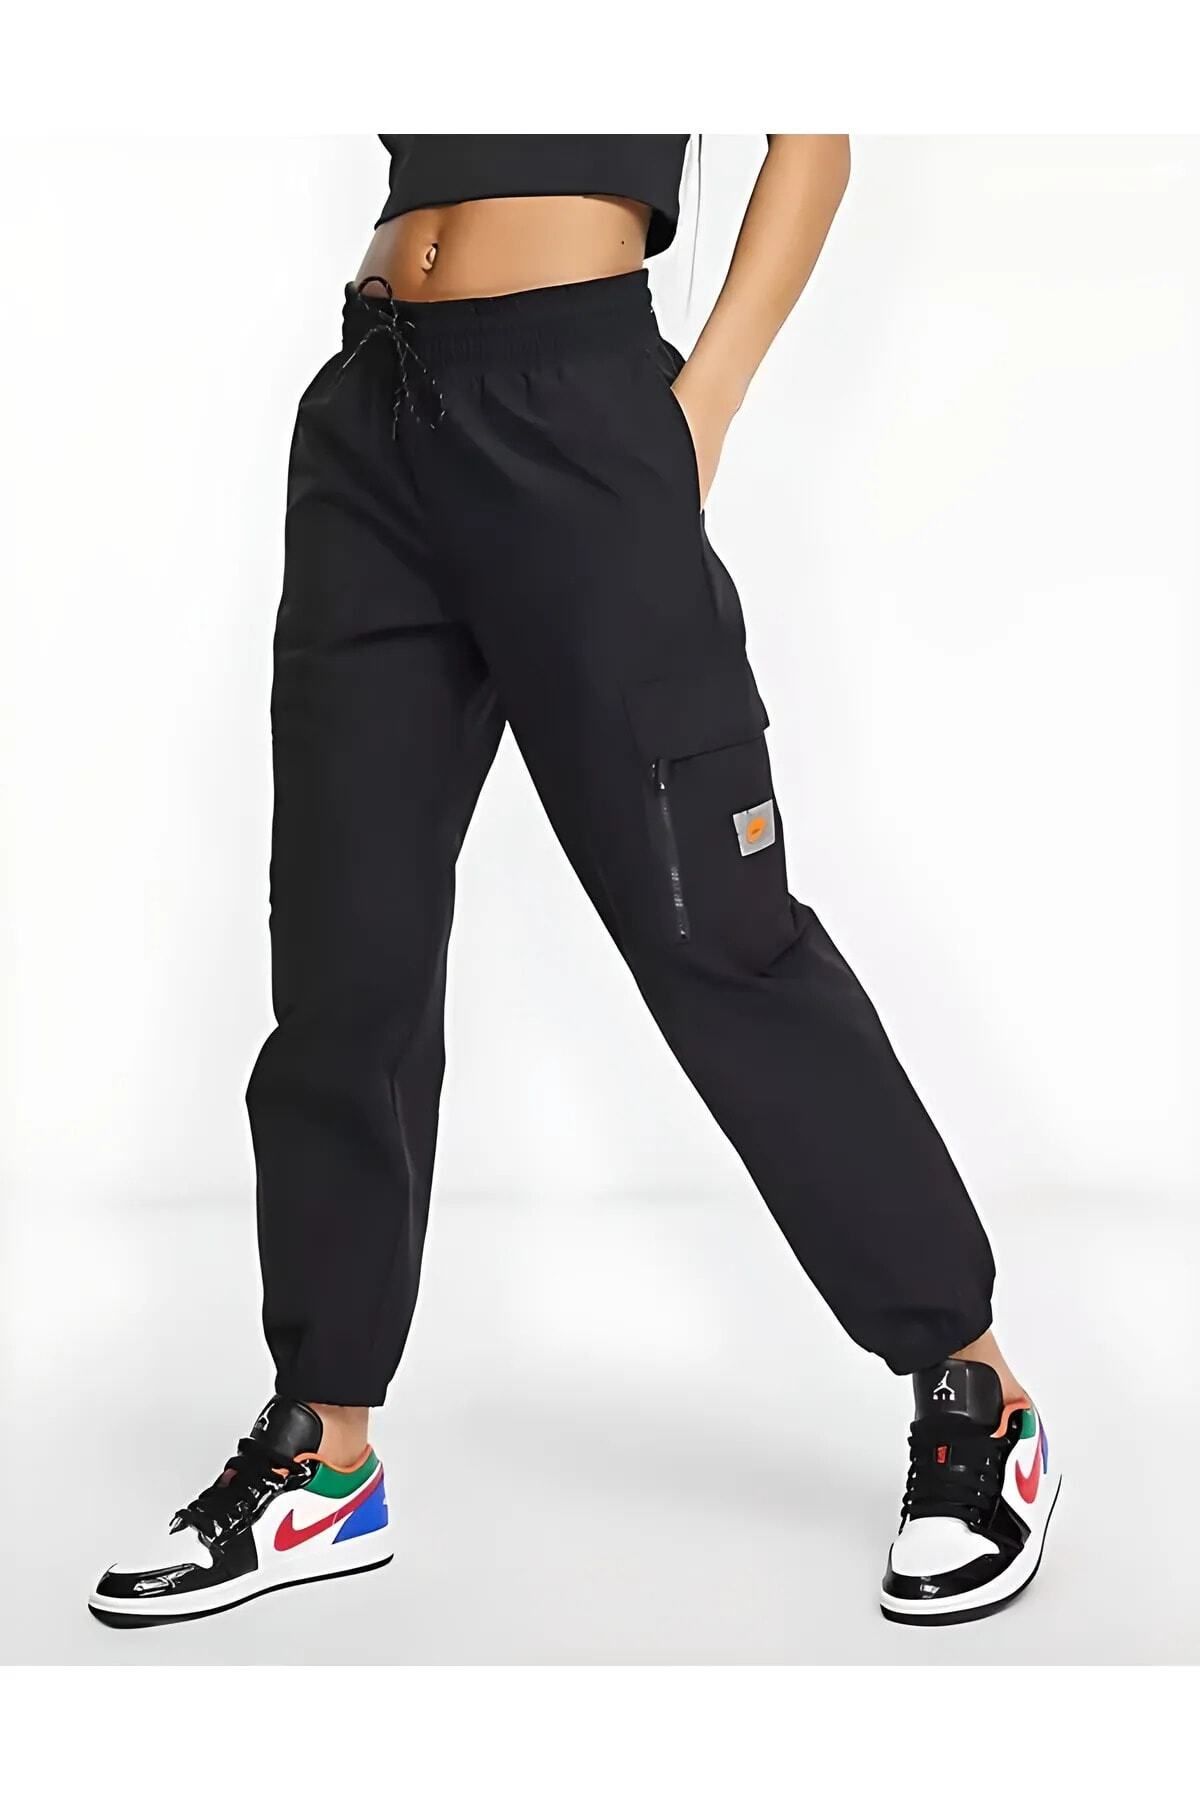 Nike Sportswear Women’s Fleece Cargo Kadın Eşofman Altı